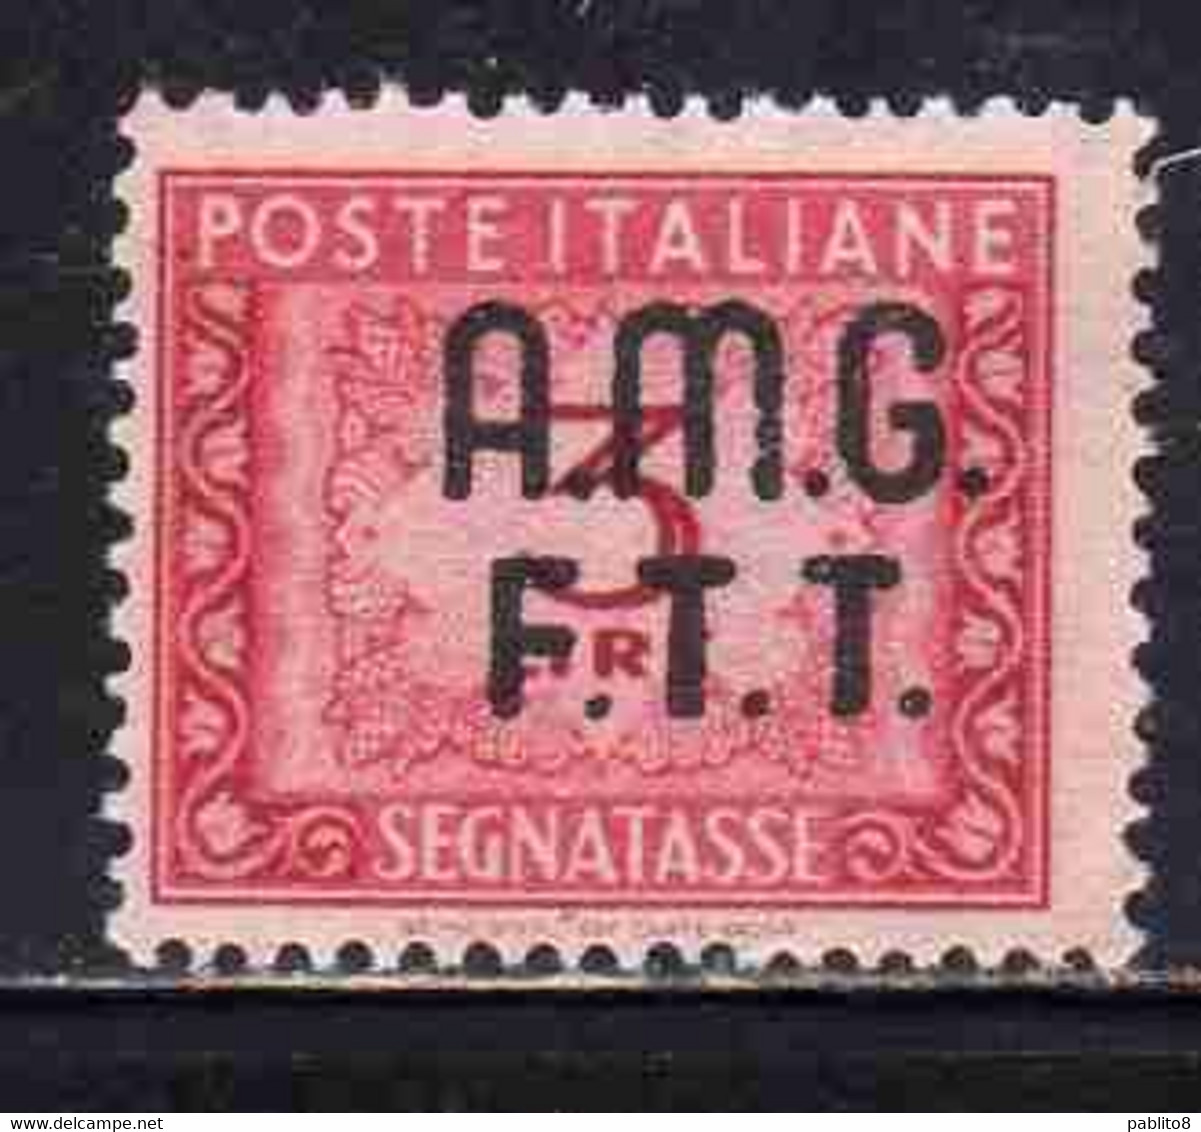 TRIESTE A 1947 - 1949 AMG-FTT OVERPRINTED SEGNATASSE POSTAGE DUE TAXE TASSE LIRE 3 MNH - Segnatasse